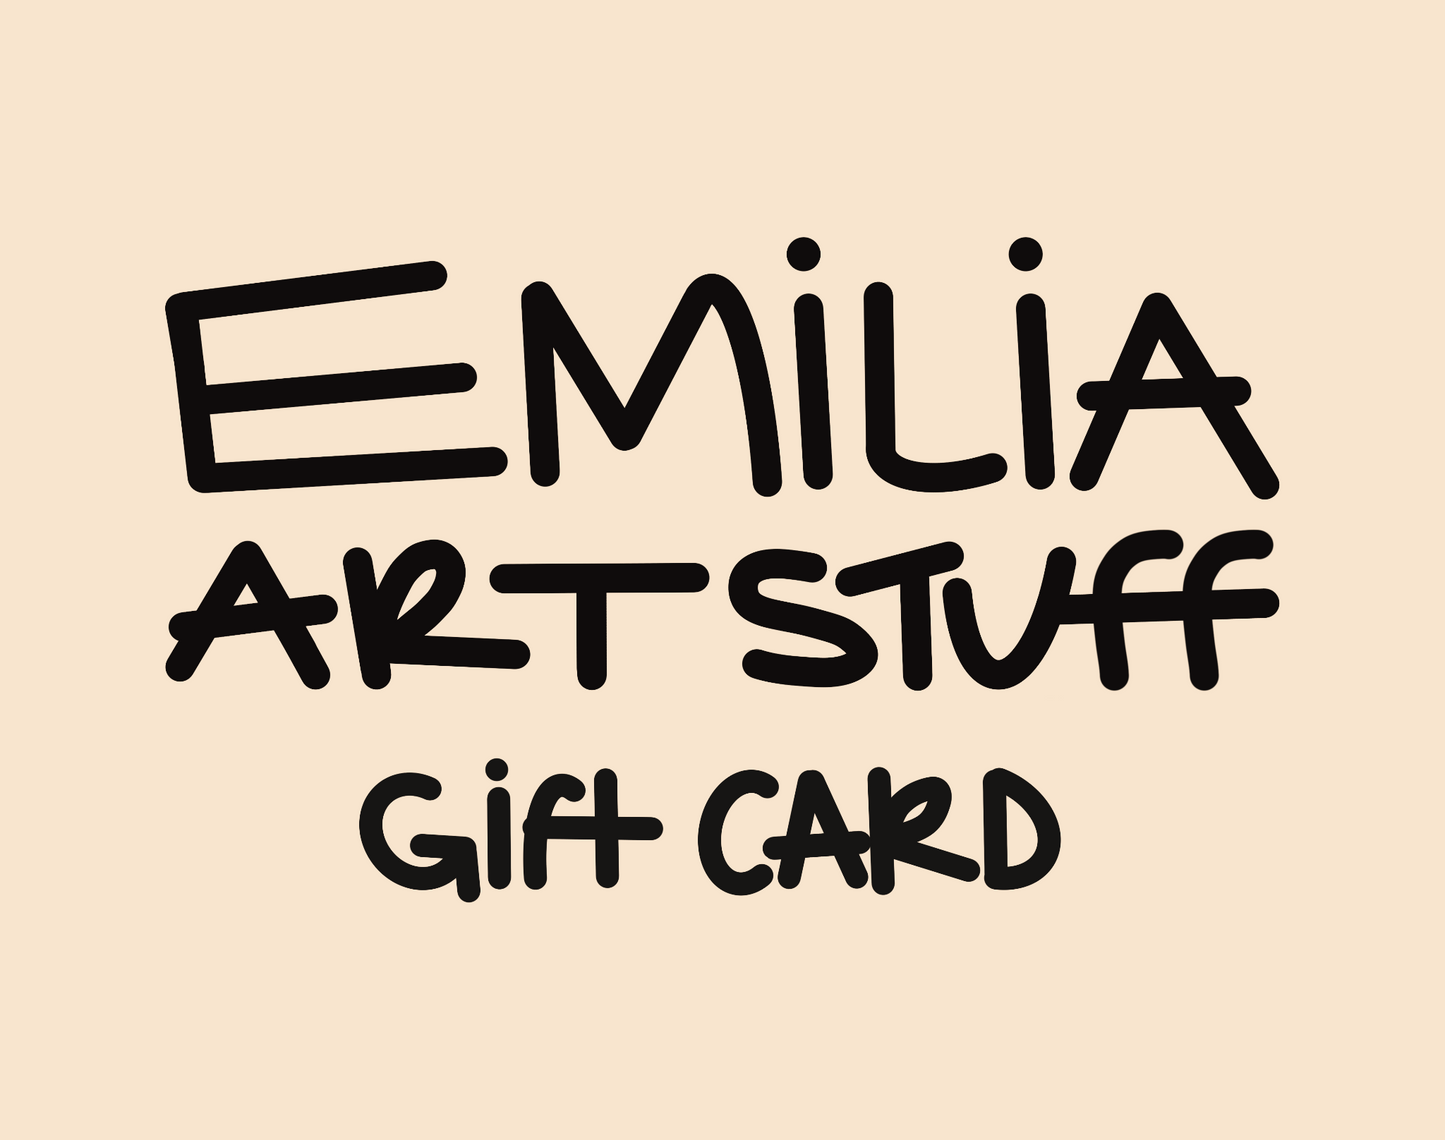 Emilia Art Stuff Gift Card Logo